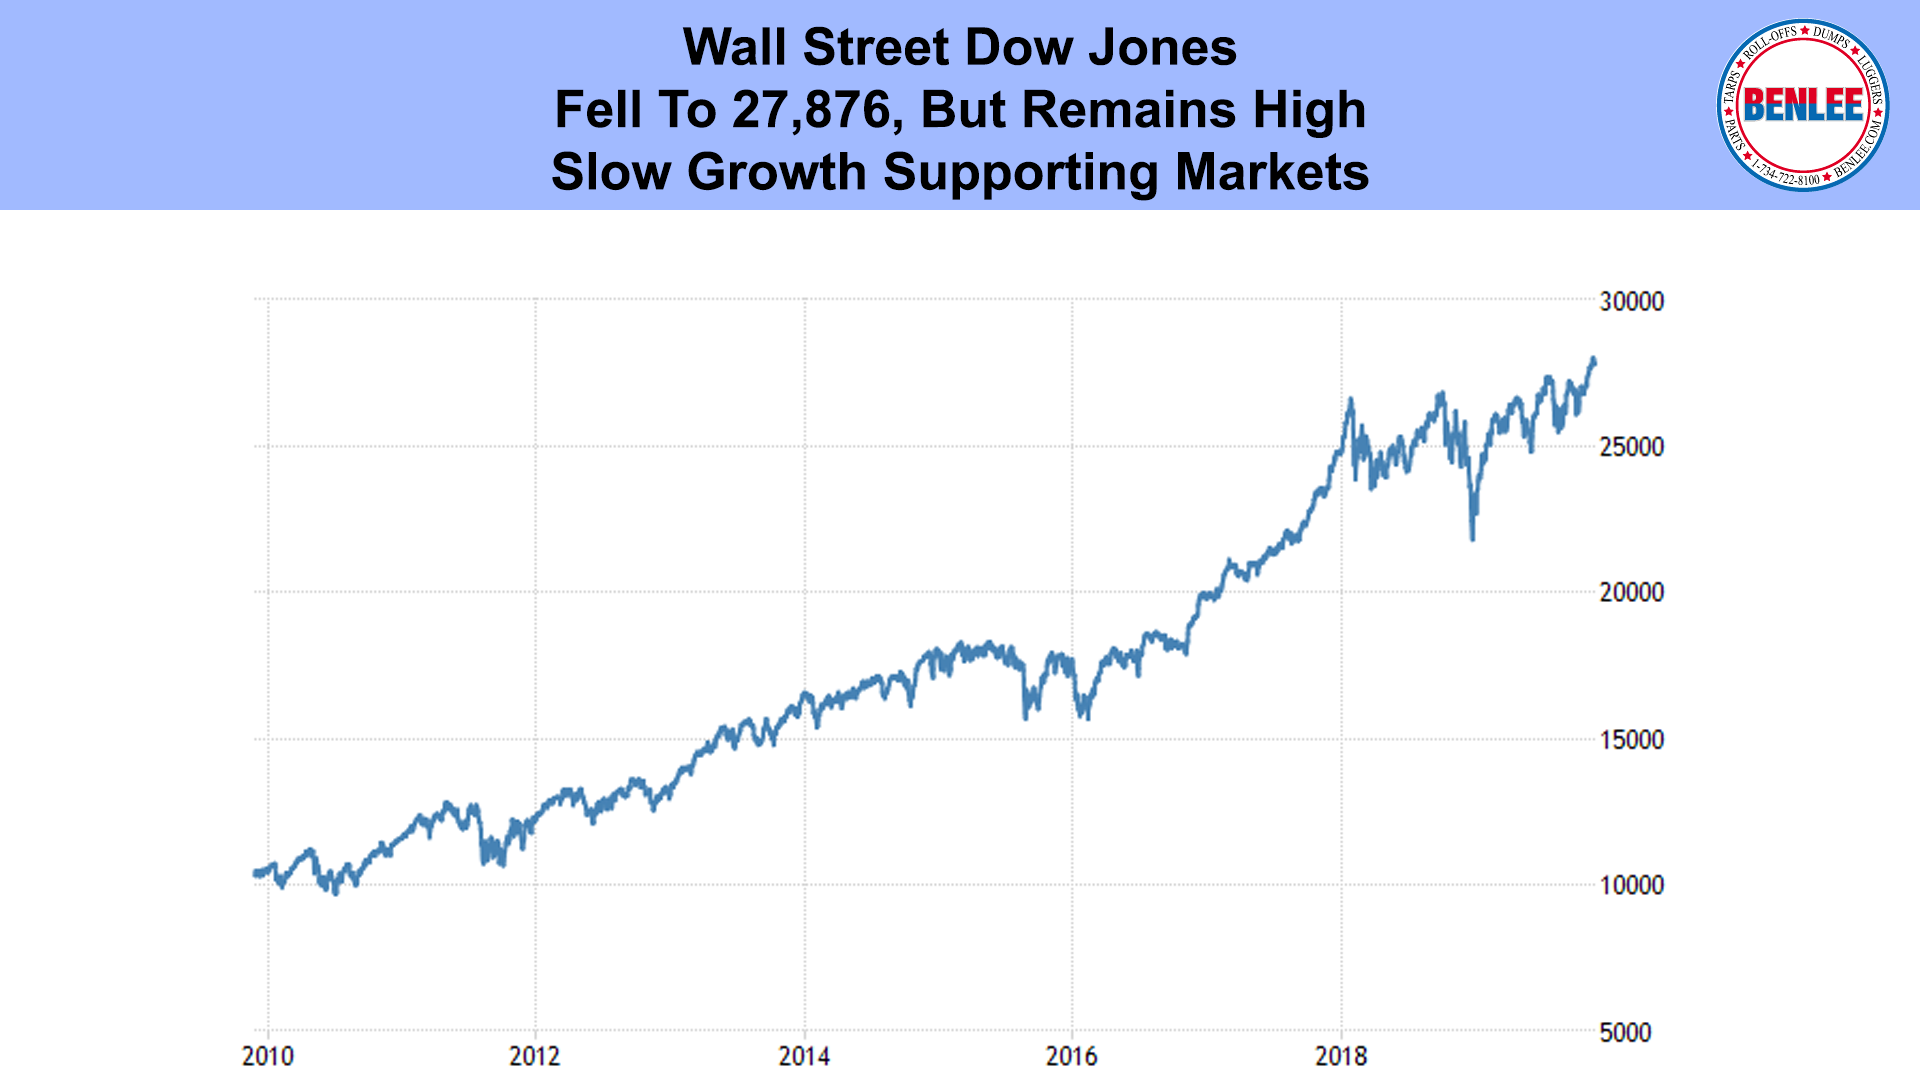 Dow Jones